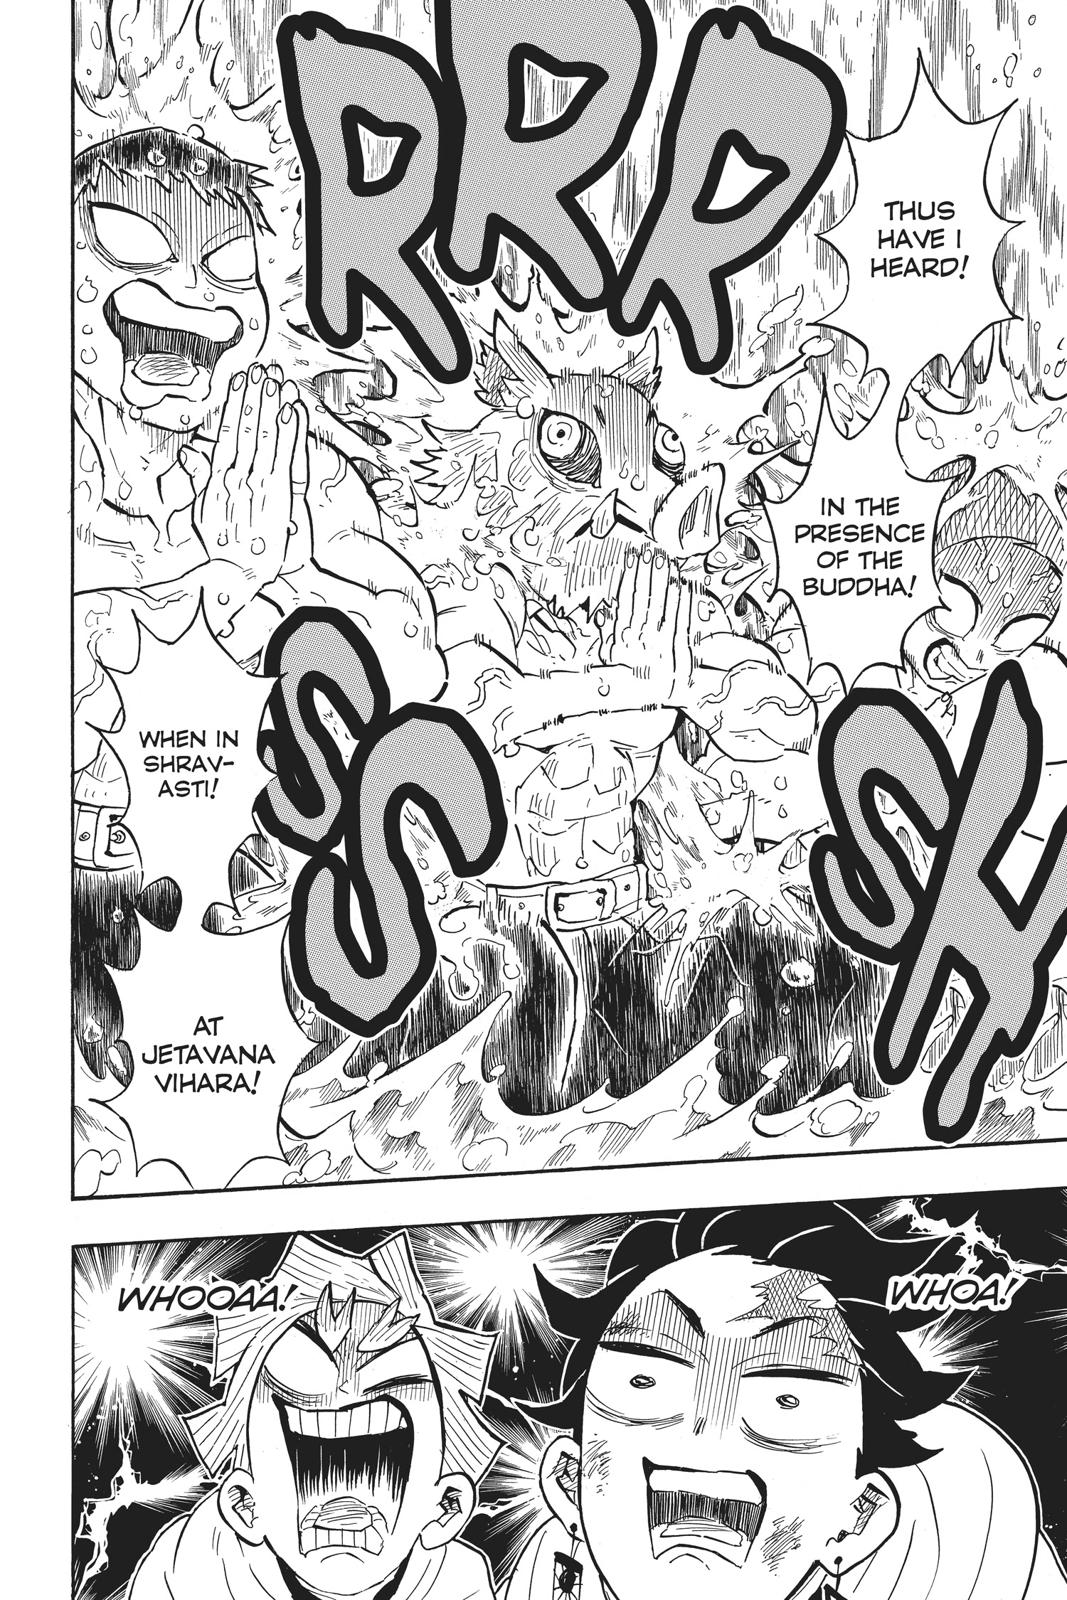 Demon Slayer Manga Manga Chapter - 133 - image 17